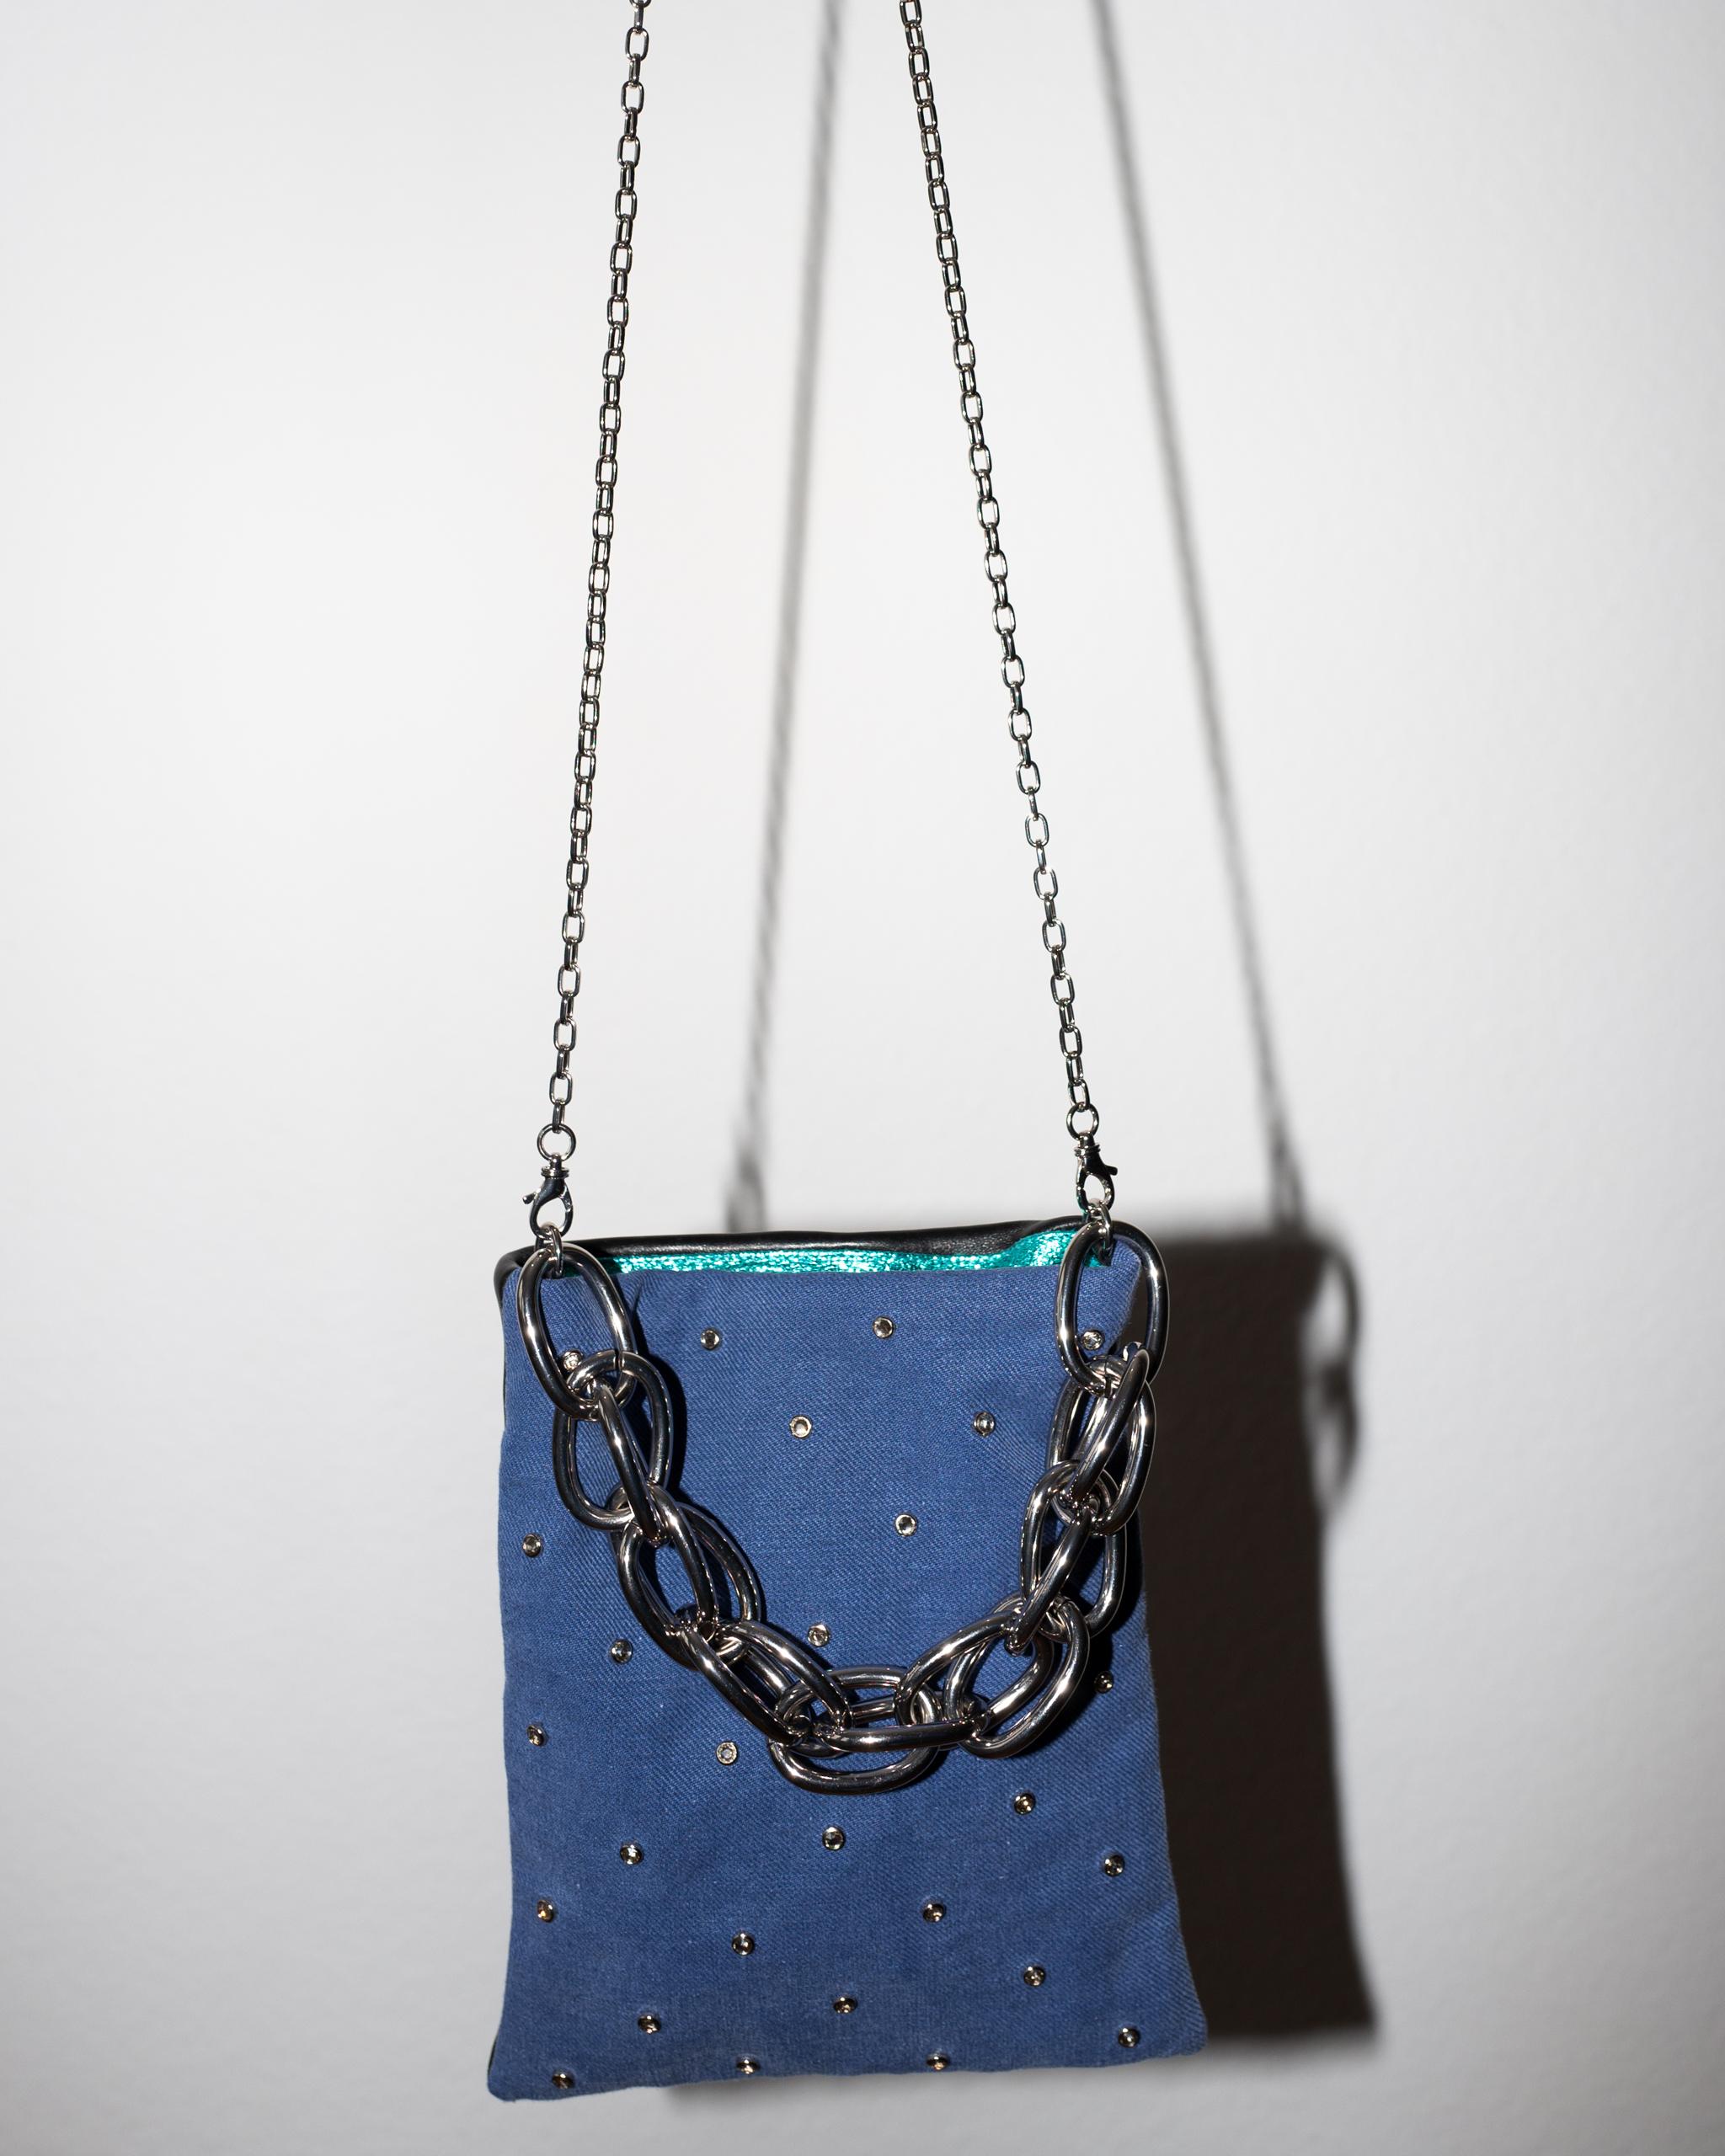 Crystal Embellished Blue Evening Shoulder Bag Black Leather Chunky Chain 2